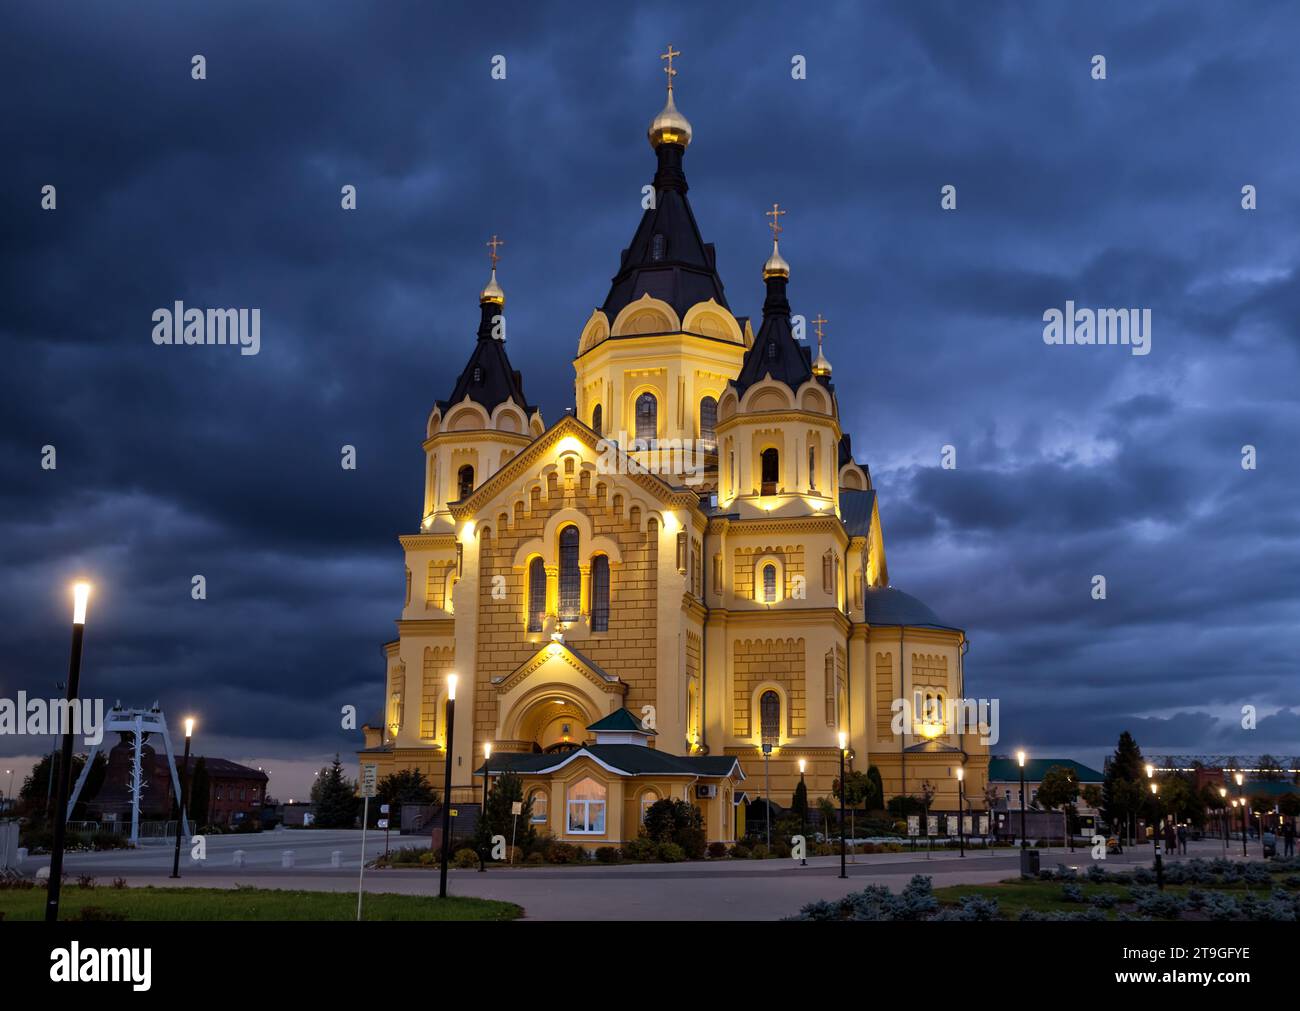 Vue nocturne de la cathédrale illuminée de St. Alexandre Nevsky sur la Strelka de Nijni Novgorod Banque D'Images